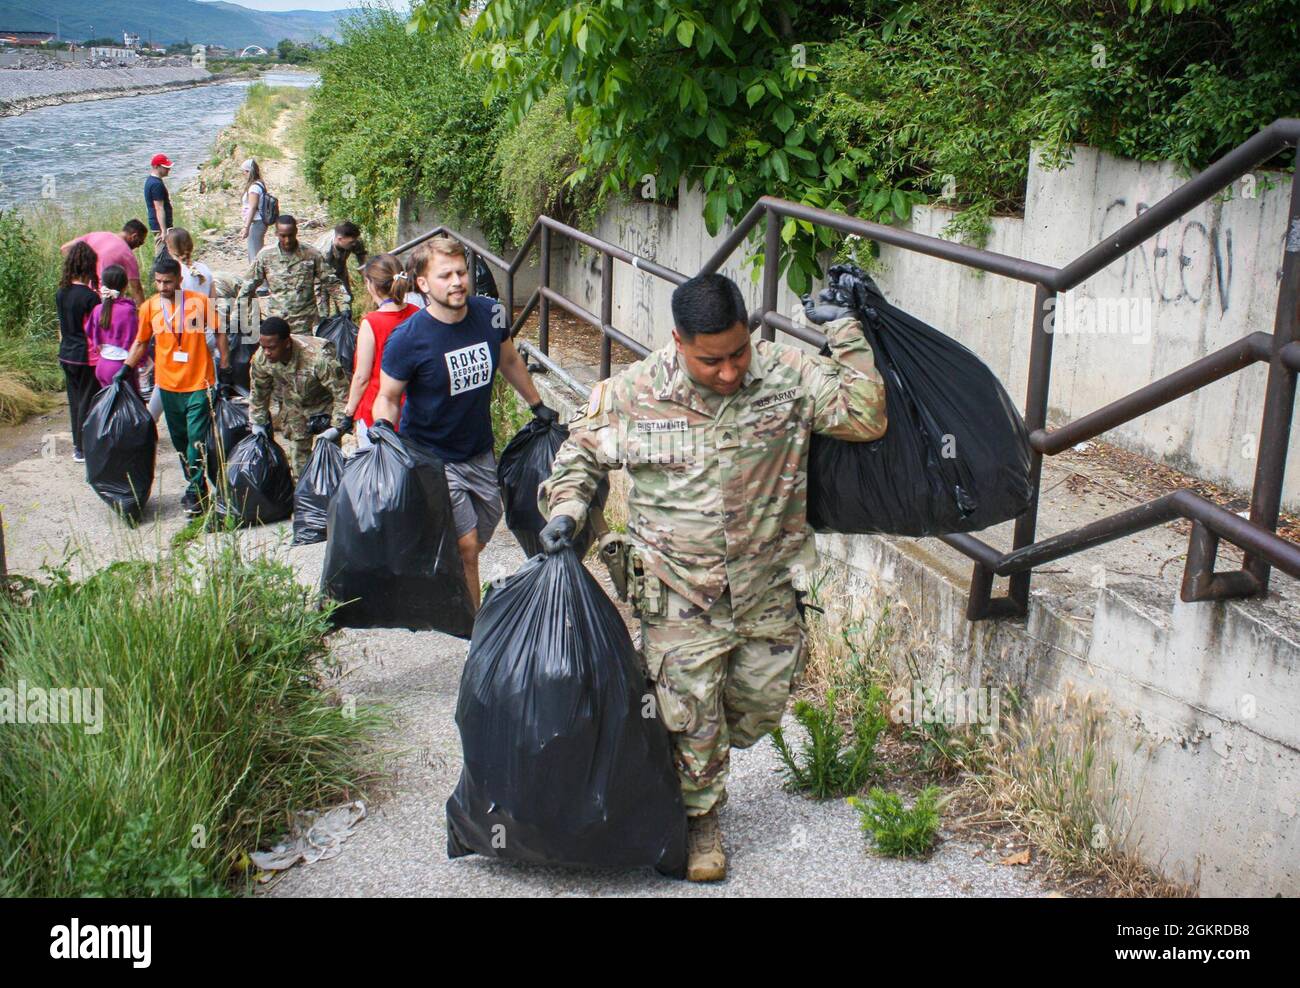 Am 19. Juni 2021 tragen US-Soldaten, die dem Regionalkommando Ost, der Kosovo-Streitkräfte und Anwohnern zugewiesen sind, Müllsäcke entlang einer Brücke in Mitrovica/Mitrovicë, Kosovo. Mehr als 40 Menschen halfen freiwillig bei der Säuberung, darunter US-Soldaten und Schweizer Soldaten sowie Bewohner aus Nord- und Süd-Mitrovica/Mitrovicë. Stockfoto